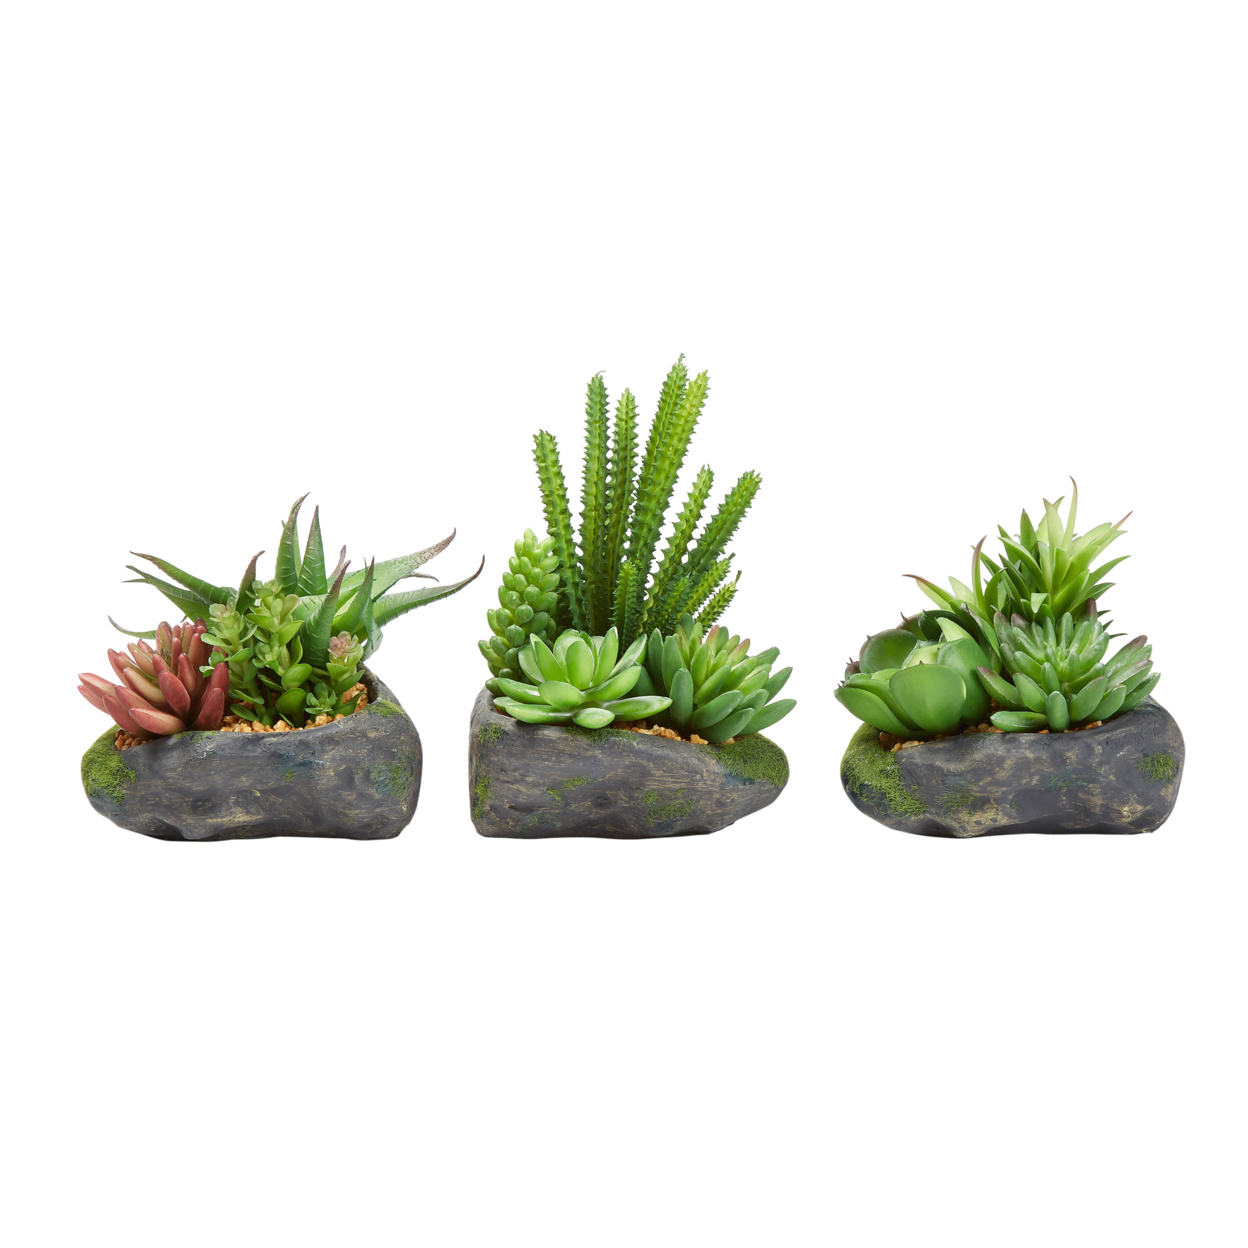 Artificial Succulent Plant Arrangements In Faux Stone Pots, 3 Piece Set In Assorted Sizes